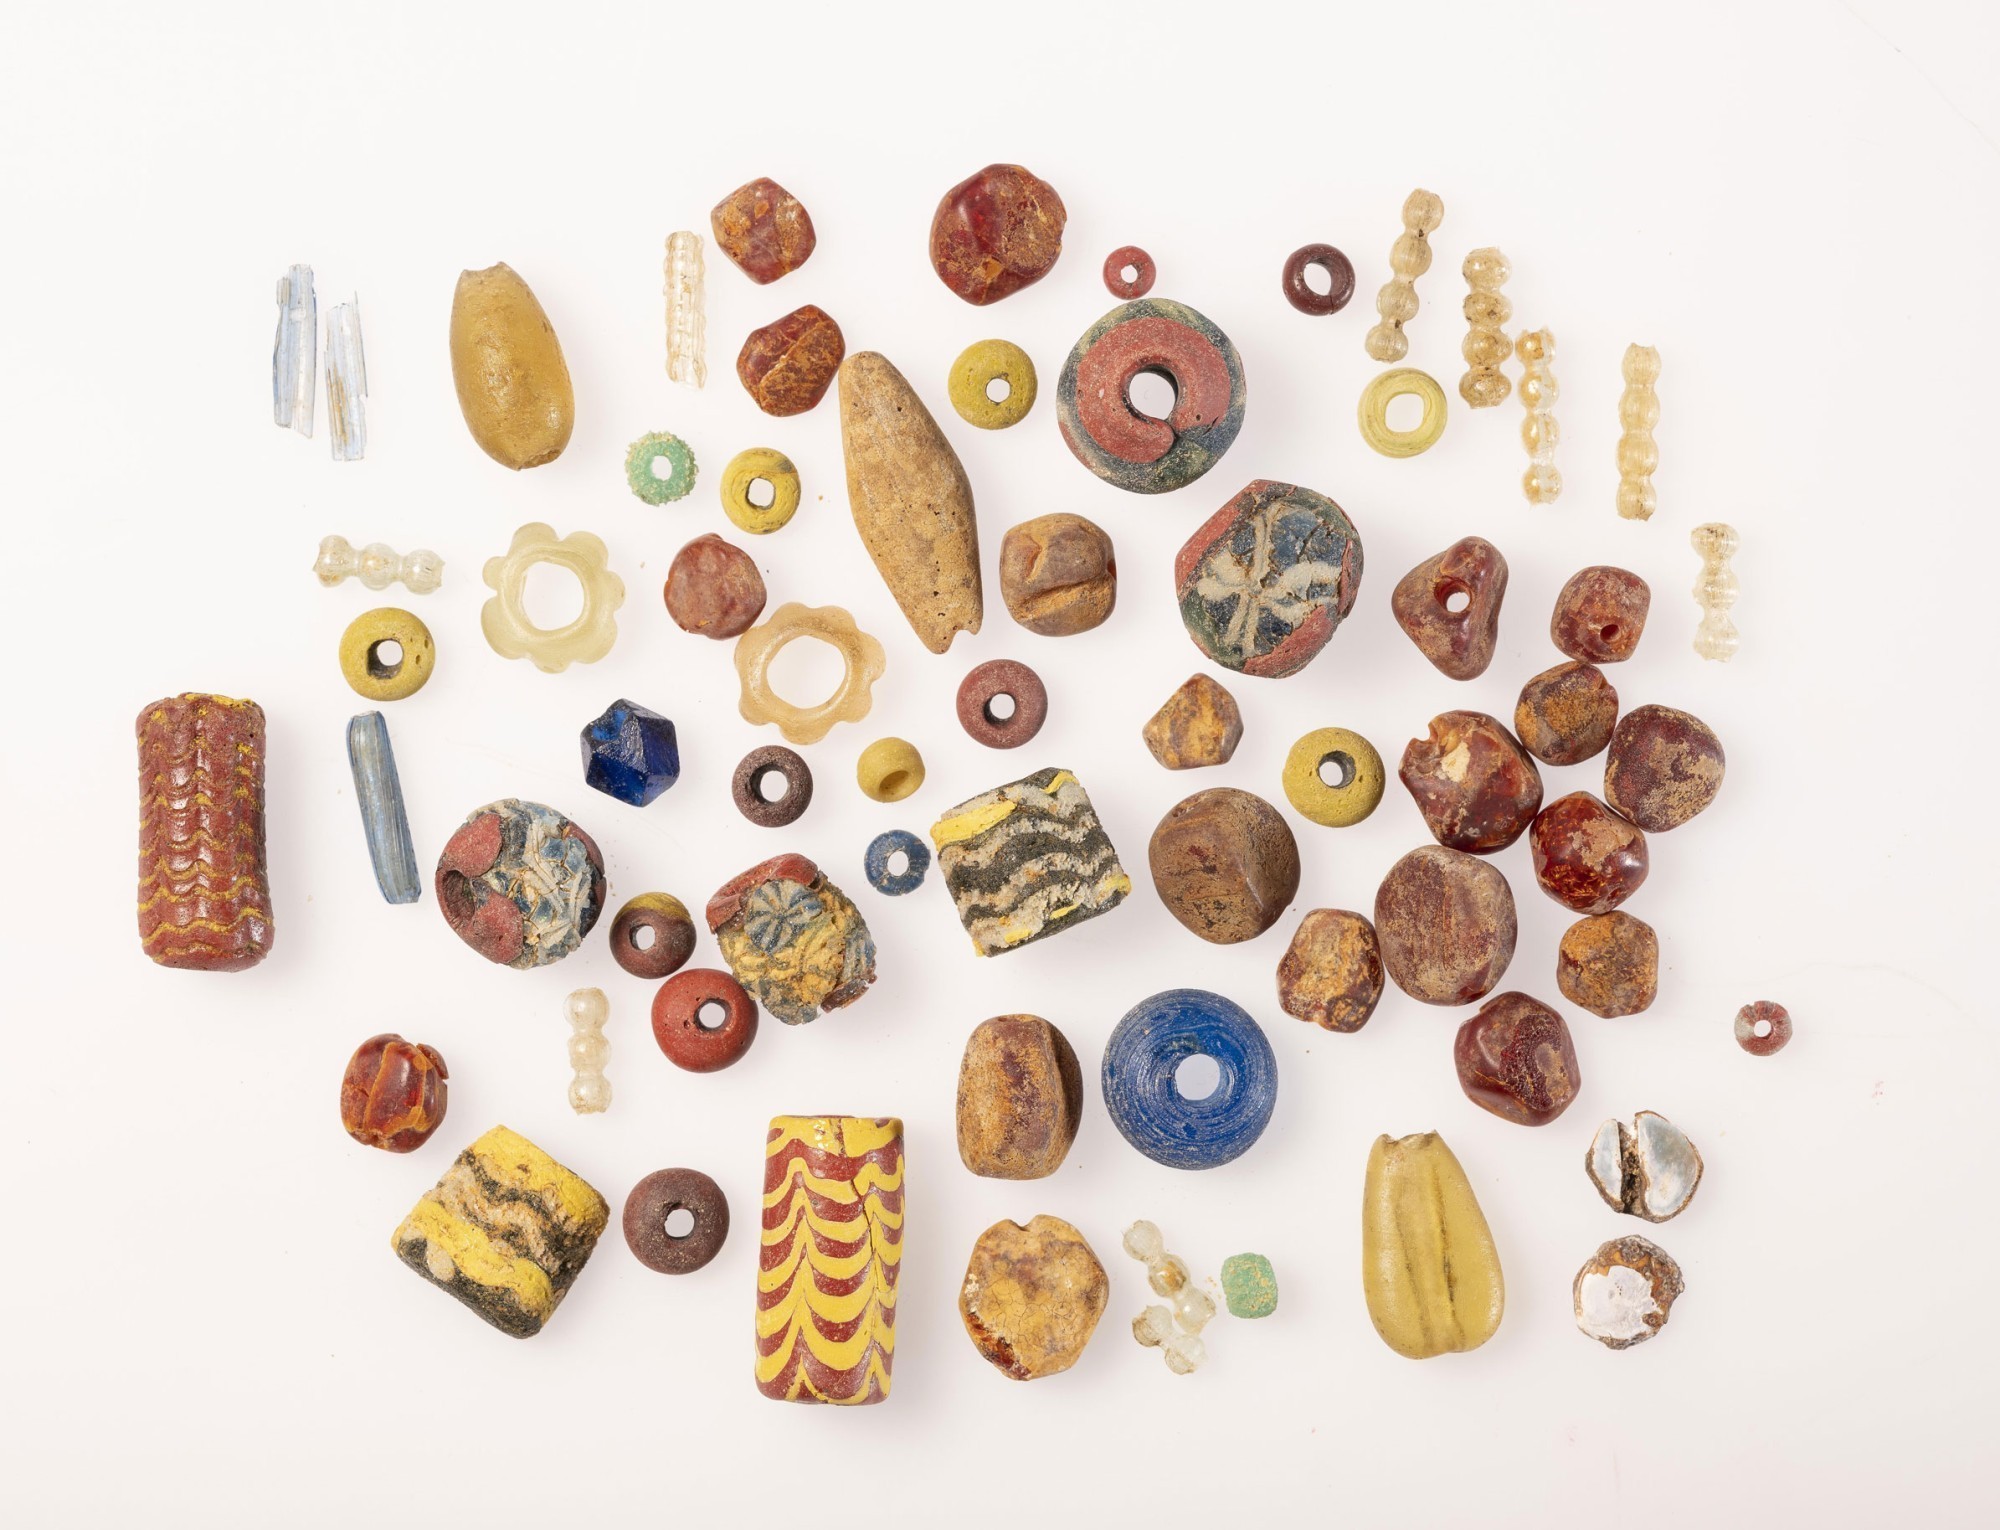 Fouille de perles provenant d'une tombe près de Wettsteinplatz Bâle-Ville, plus de 350 perles de verre et d'ambre de toutes les formes et grandeurs ont été découvertes.